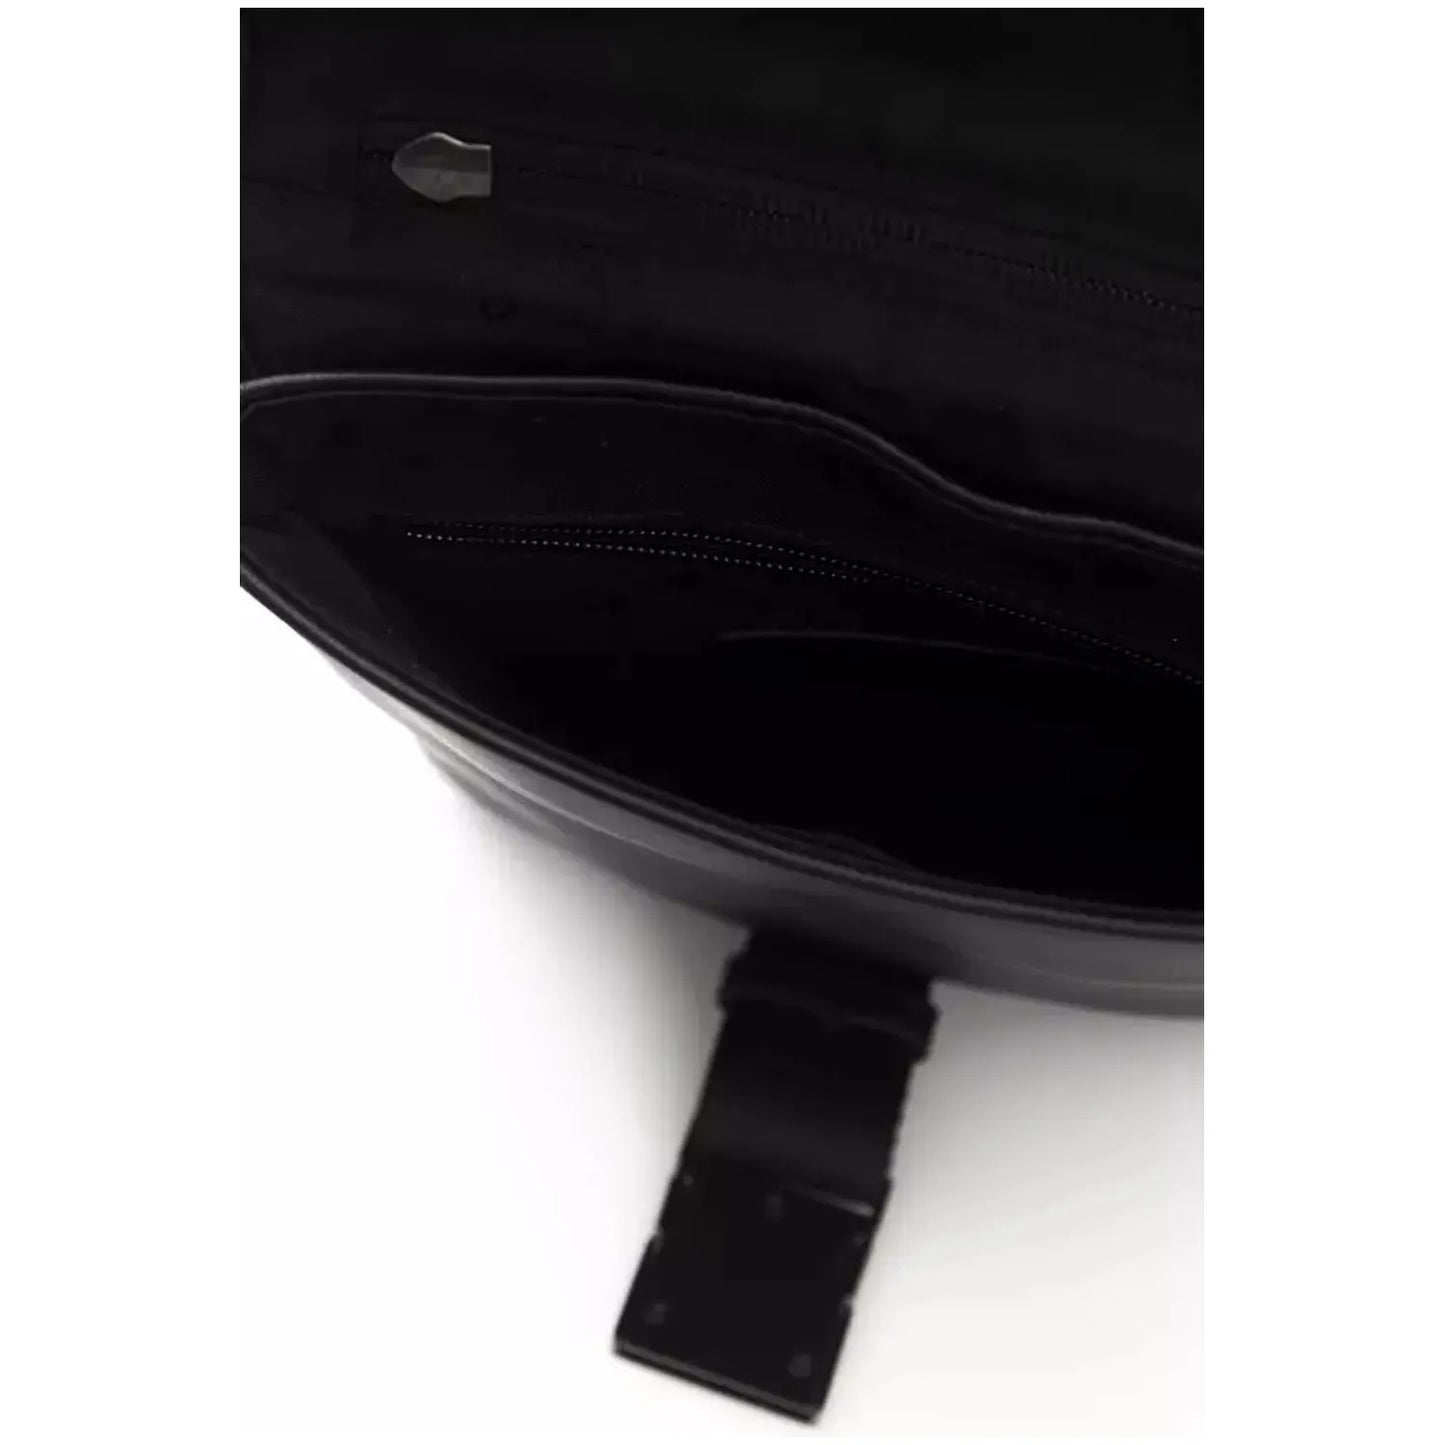 Cerruti 1881 Elegant Black Messenger Bag with Metal Clasp black-polyurethane-messenger-bag